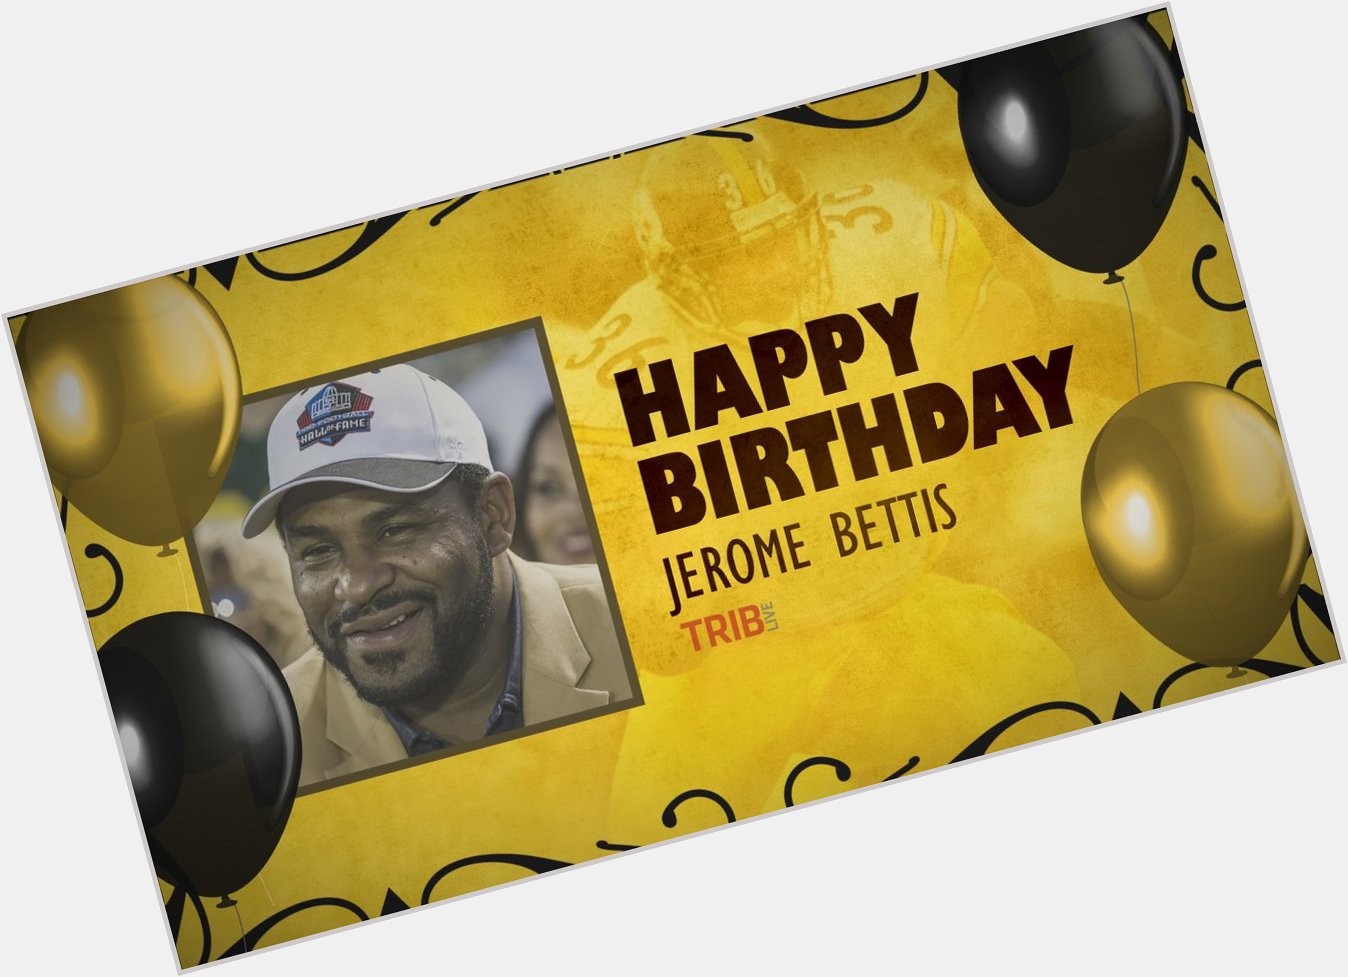 Happy Birthday, Jerome Bettis!  